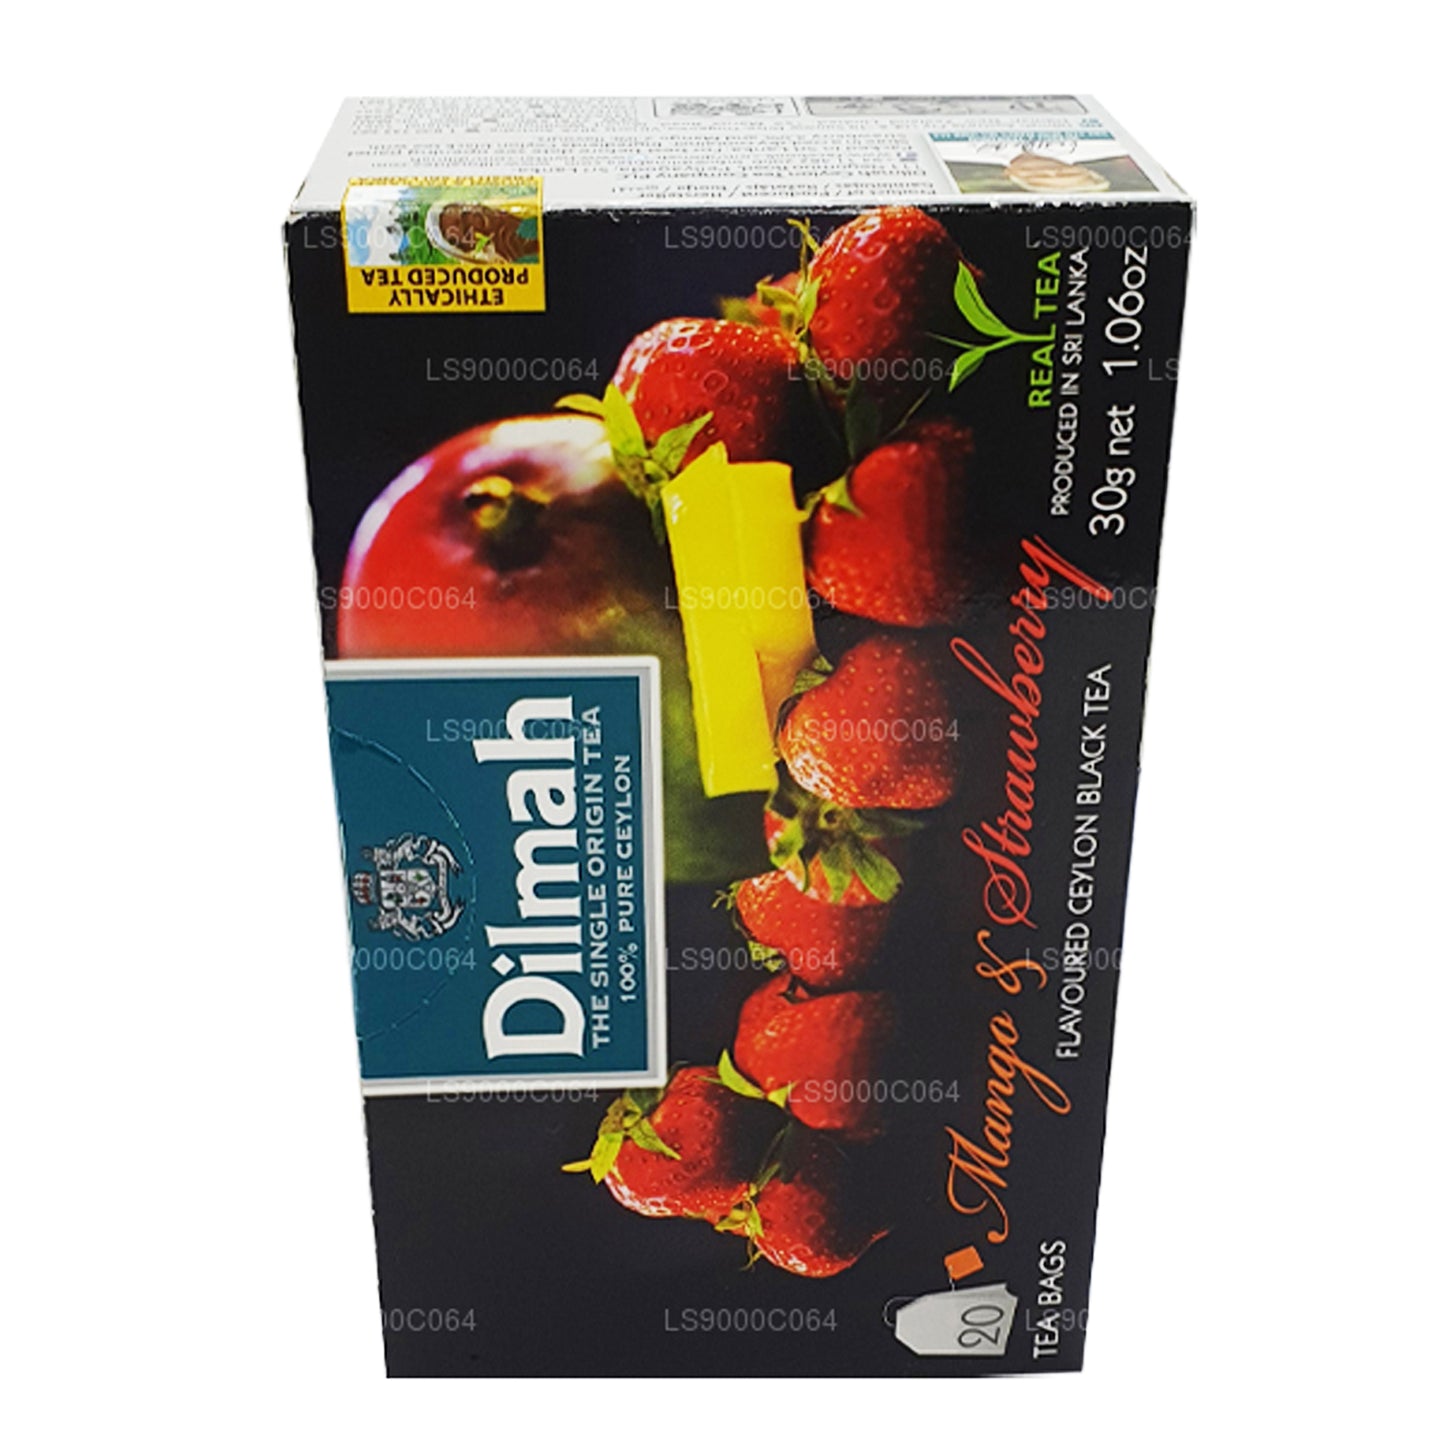 Dilmah Tee mit Mango- und Erdbeergeschmack (30 g) 20 Teebeutel